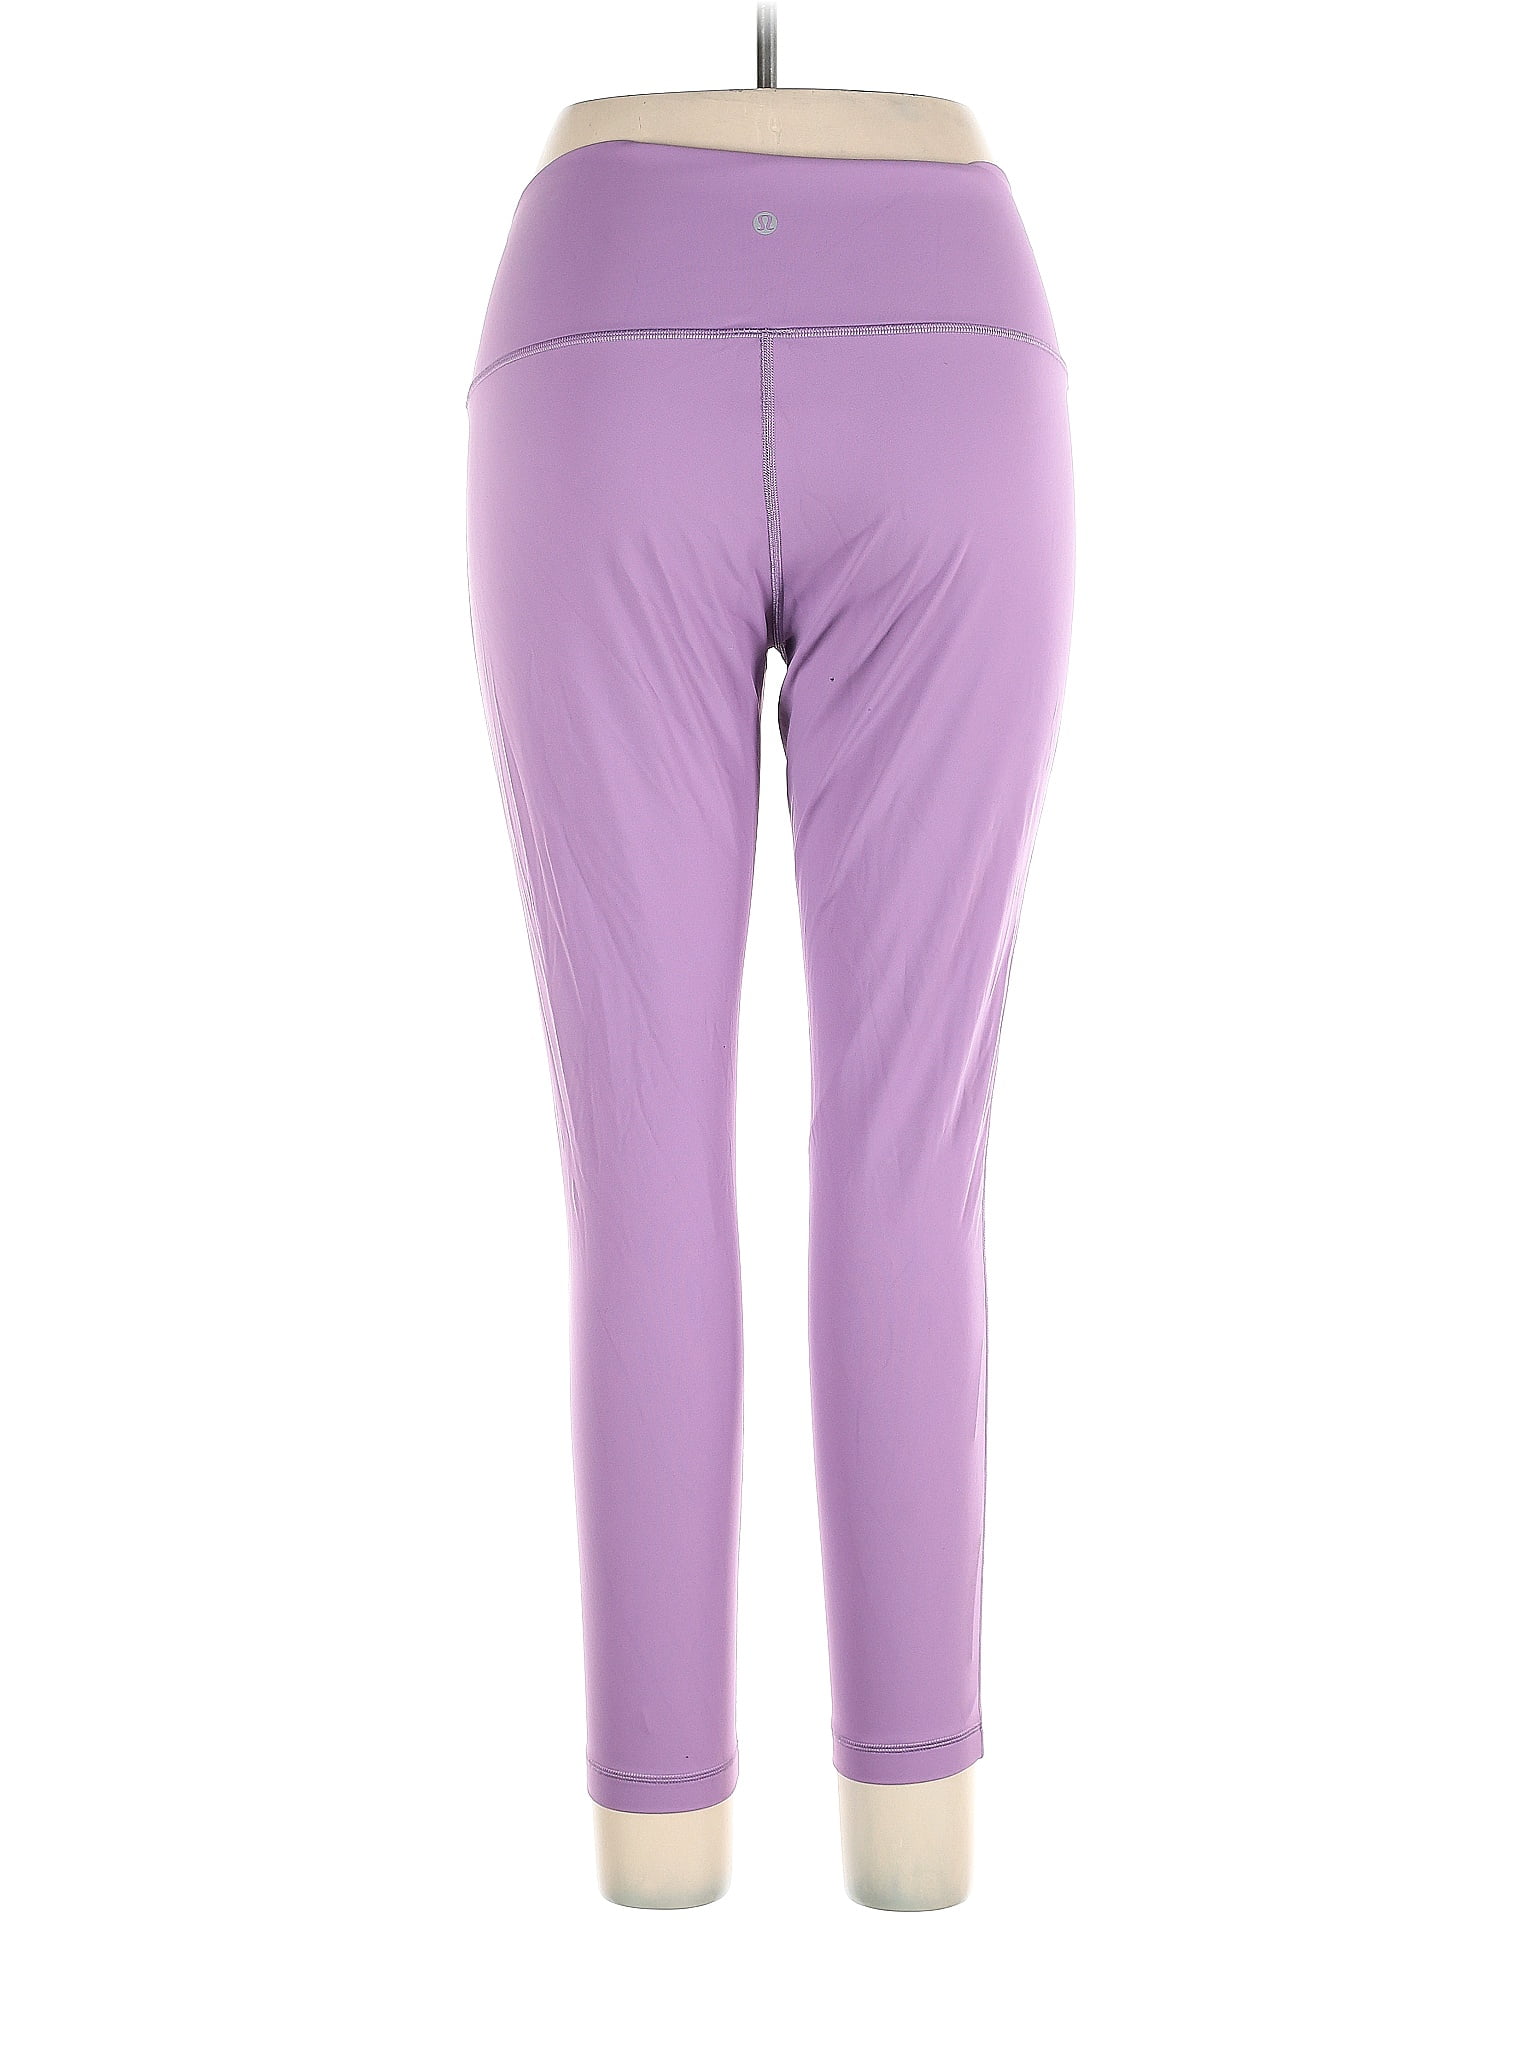 Lululemon Athletica Purple Active Pants Size 14 - 47% off